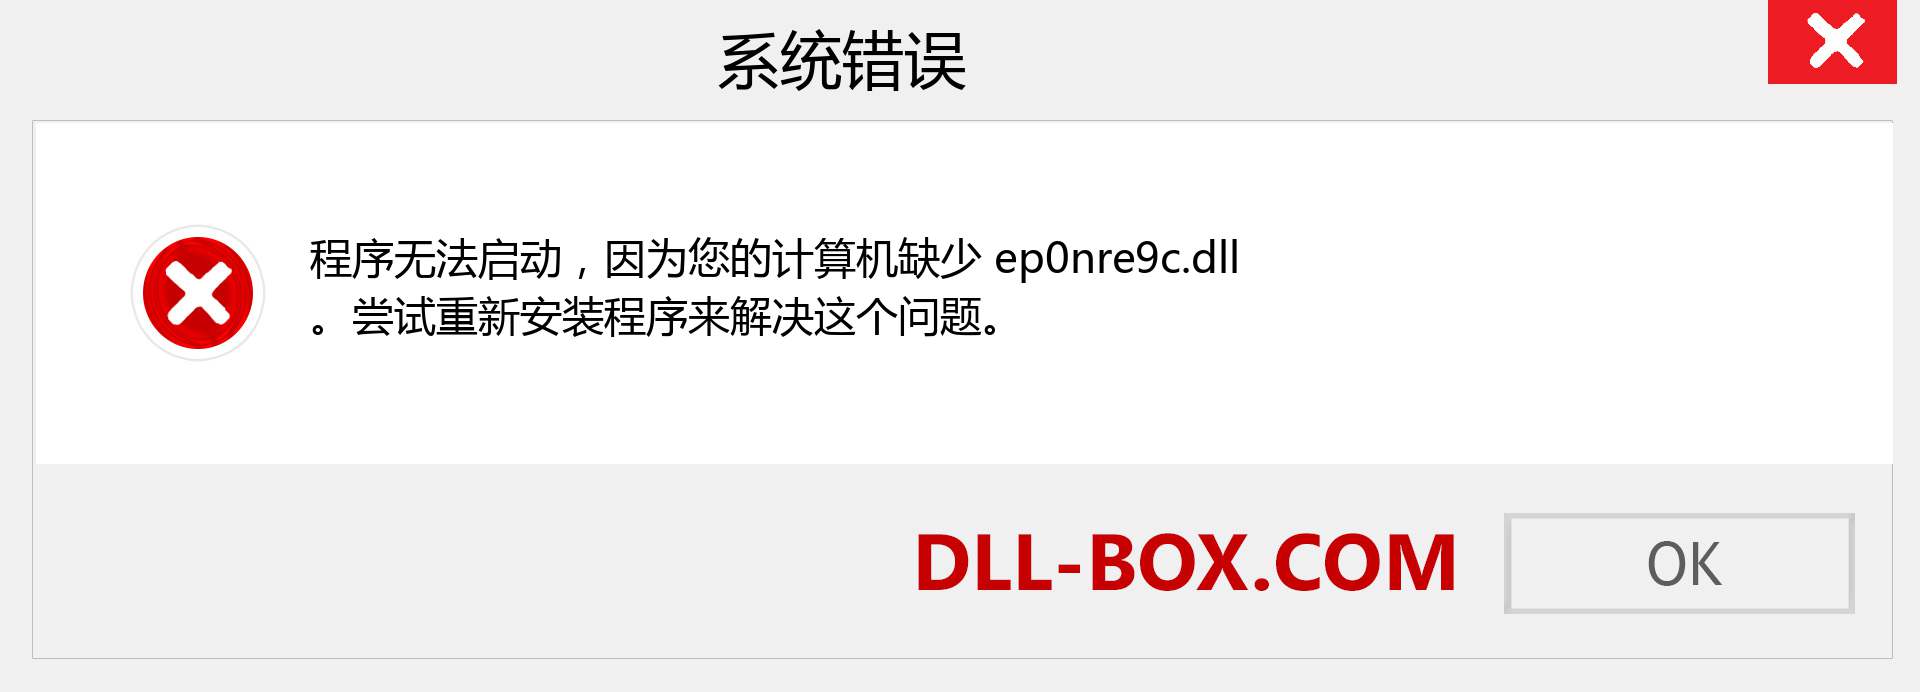 ep0nre9c.dll 文件丢失？。 适用于 Windows 7、8、10 的下载 - 修复 Windows、照片、图像上的 ep0nre9c dll 丢失错误